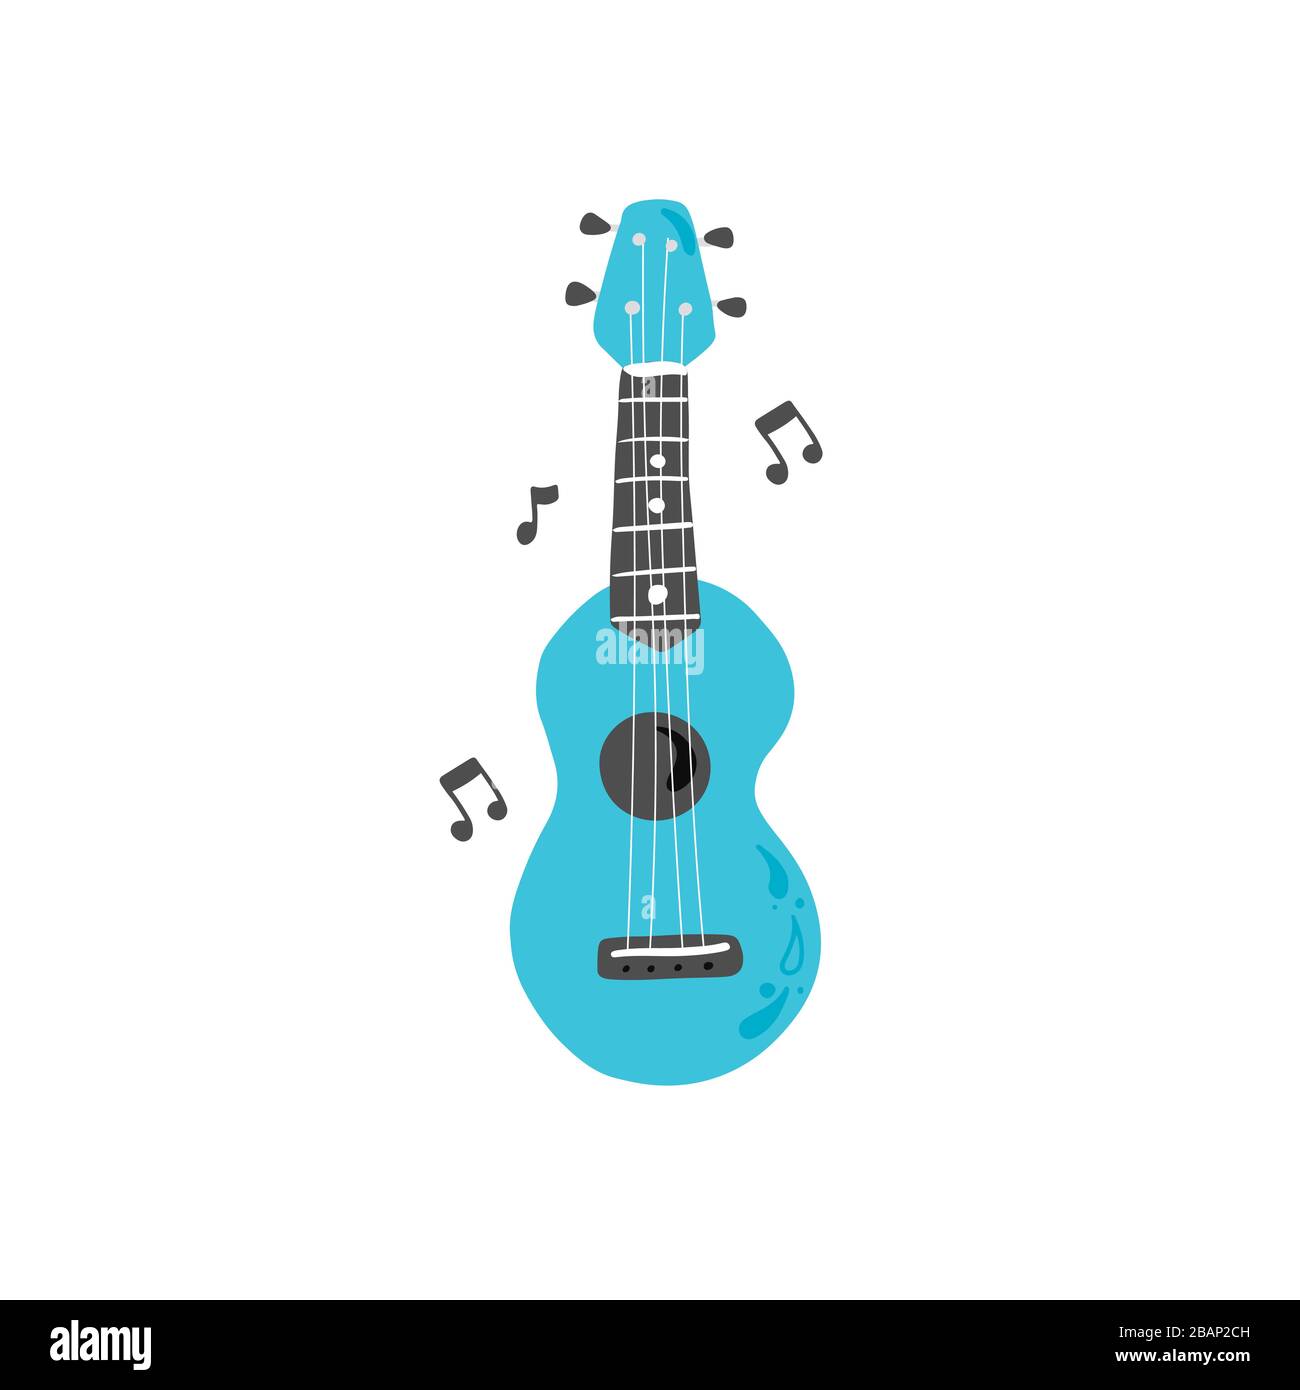 Joli ukulele de dessin animé pour affiche d'été, motif carte. Petite guitare, instrument de musique à cordes de style hawaï. Illuataration vectorielle de style simple dessiné à la main. Illustration de Vecteur